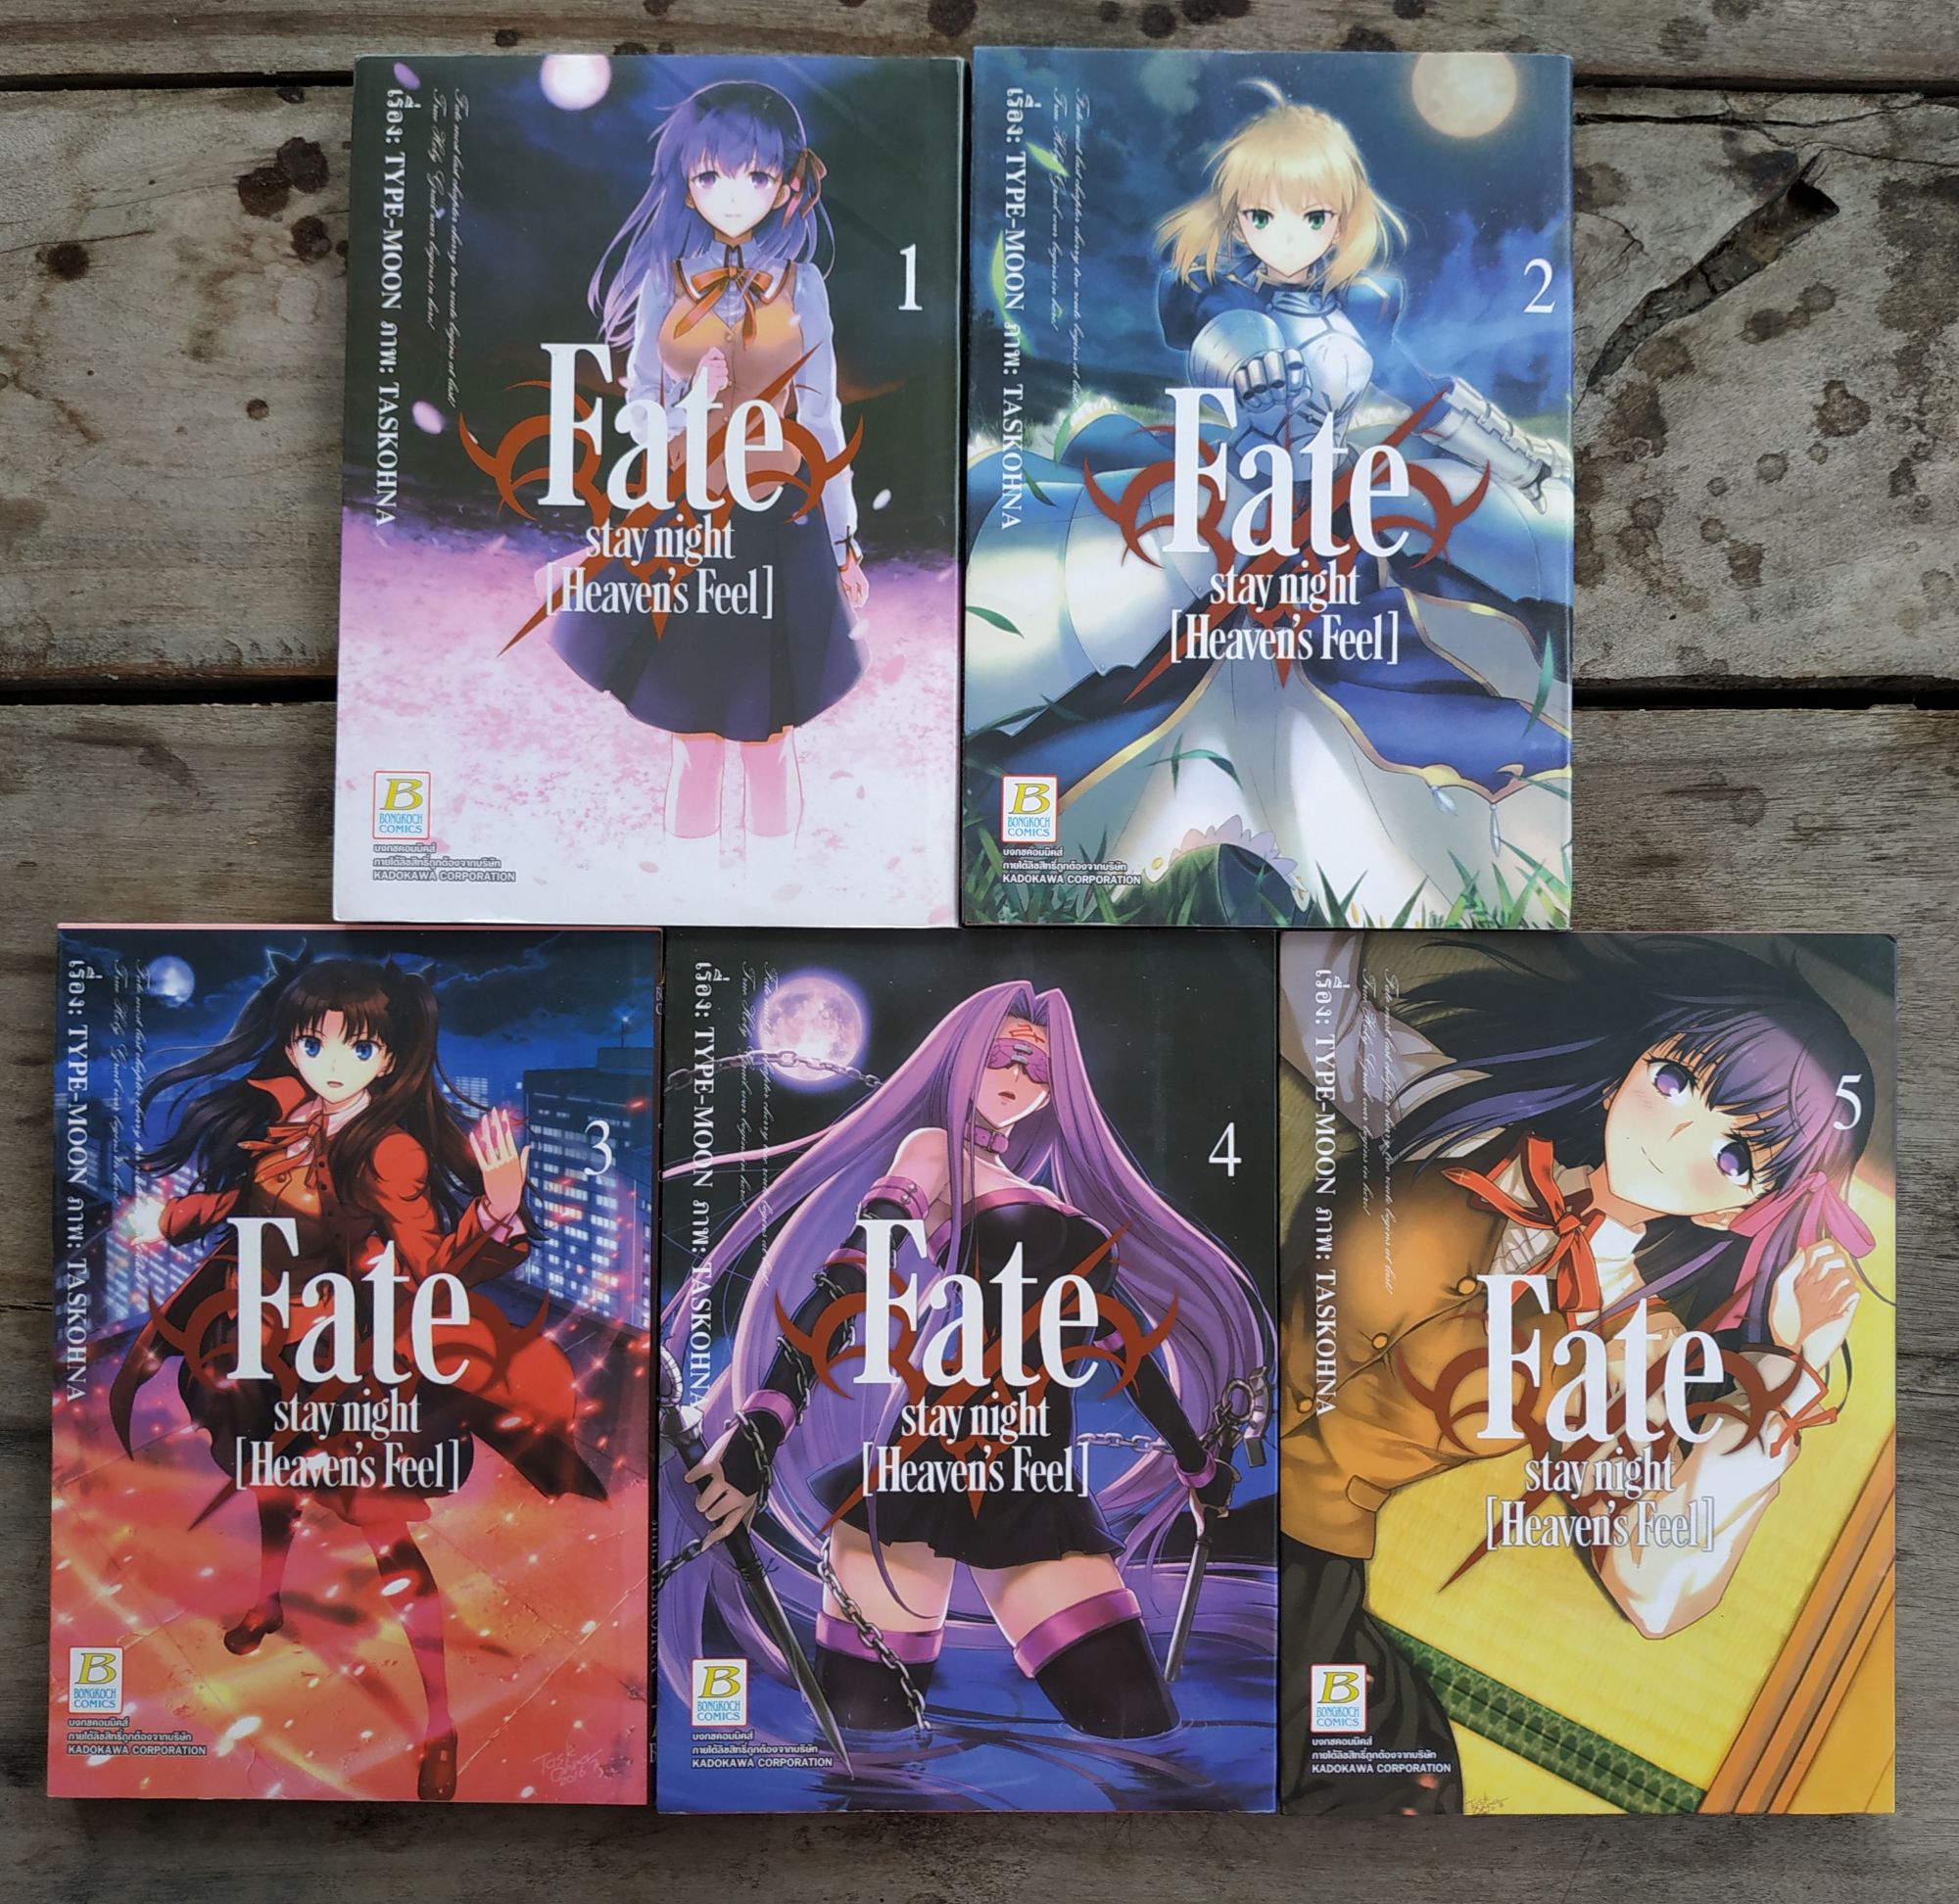 หนังสือการ์ตูน Fate stay night (Heaven's feel) มี 1-5 สภาพบ้าน